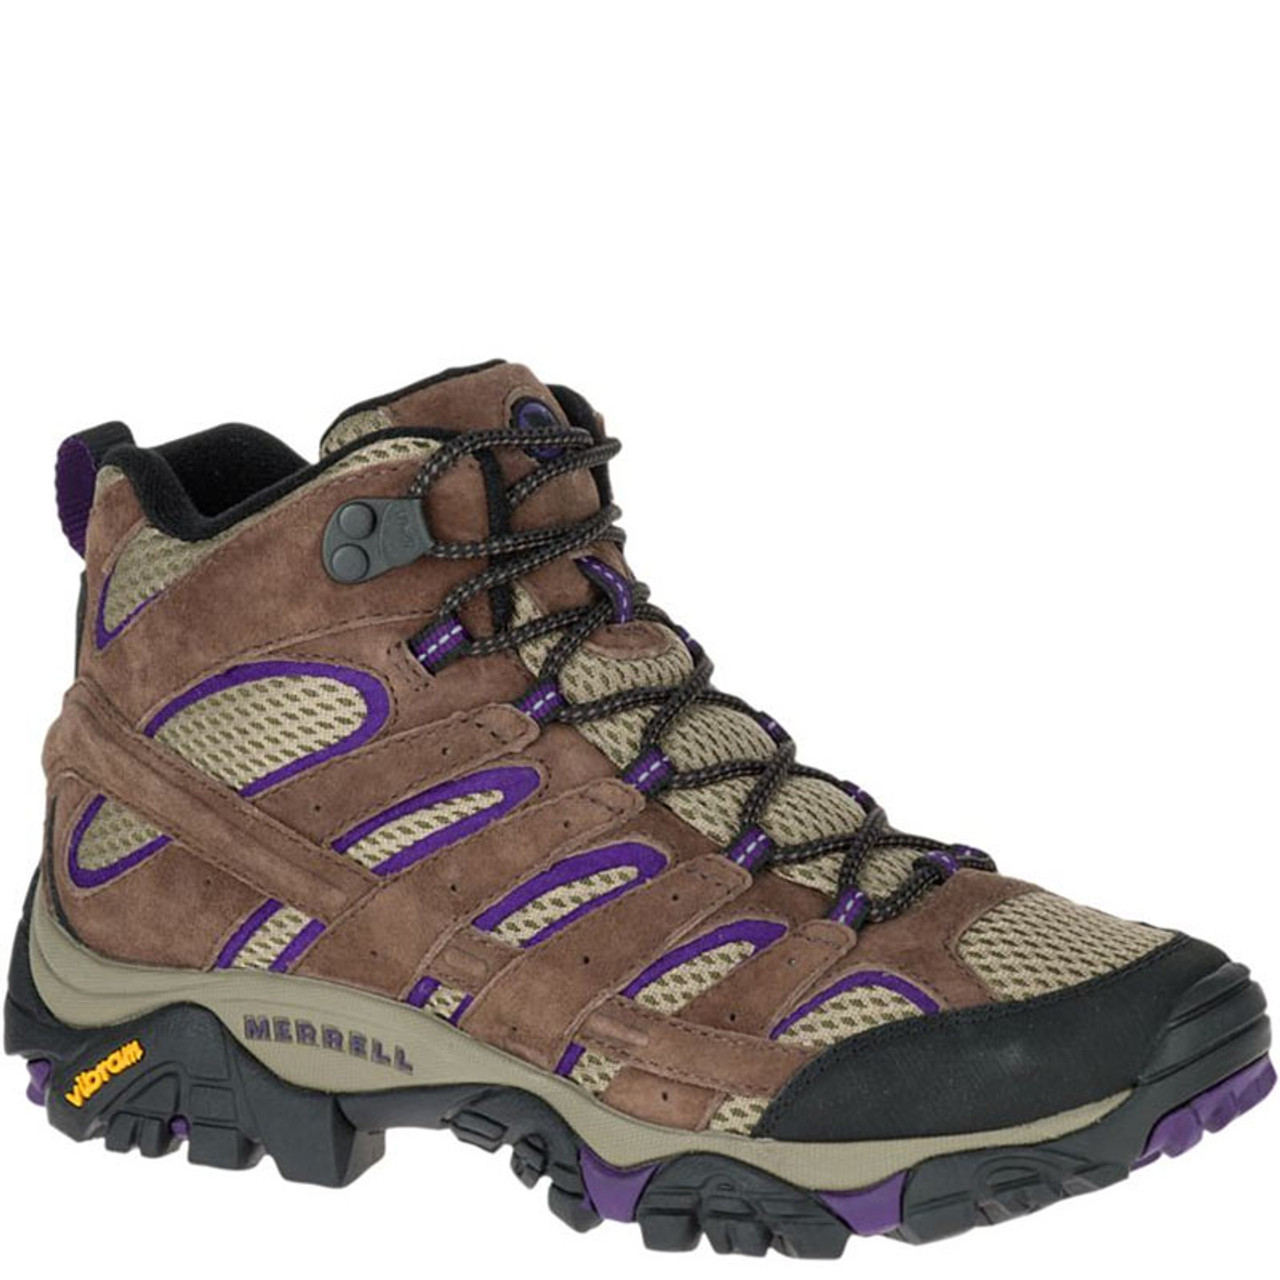 Merrell J06011 Men's MOAB 2 VENTILATOR Hiking Shoes